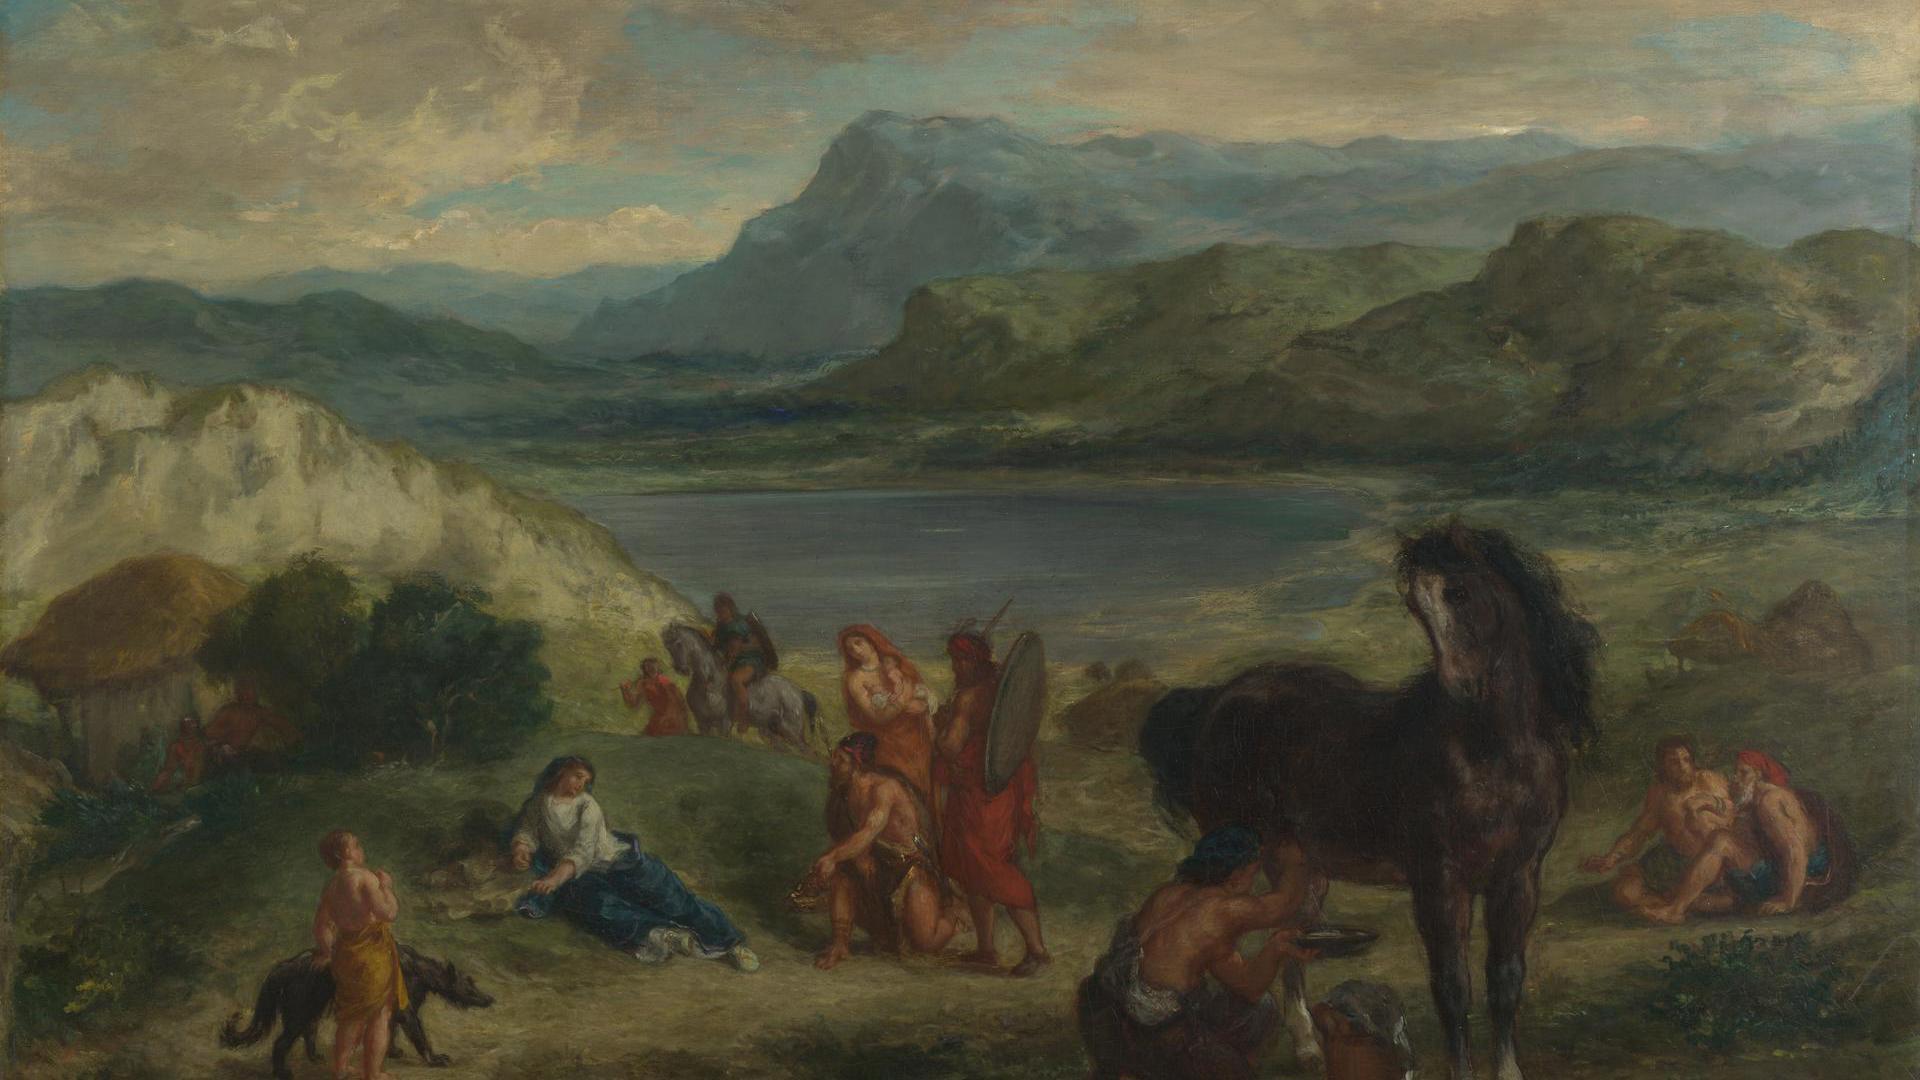 Ovid among the Scythians by Eugène Delacroix